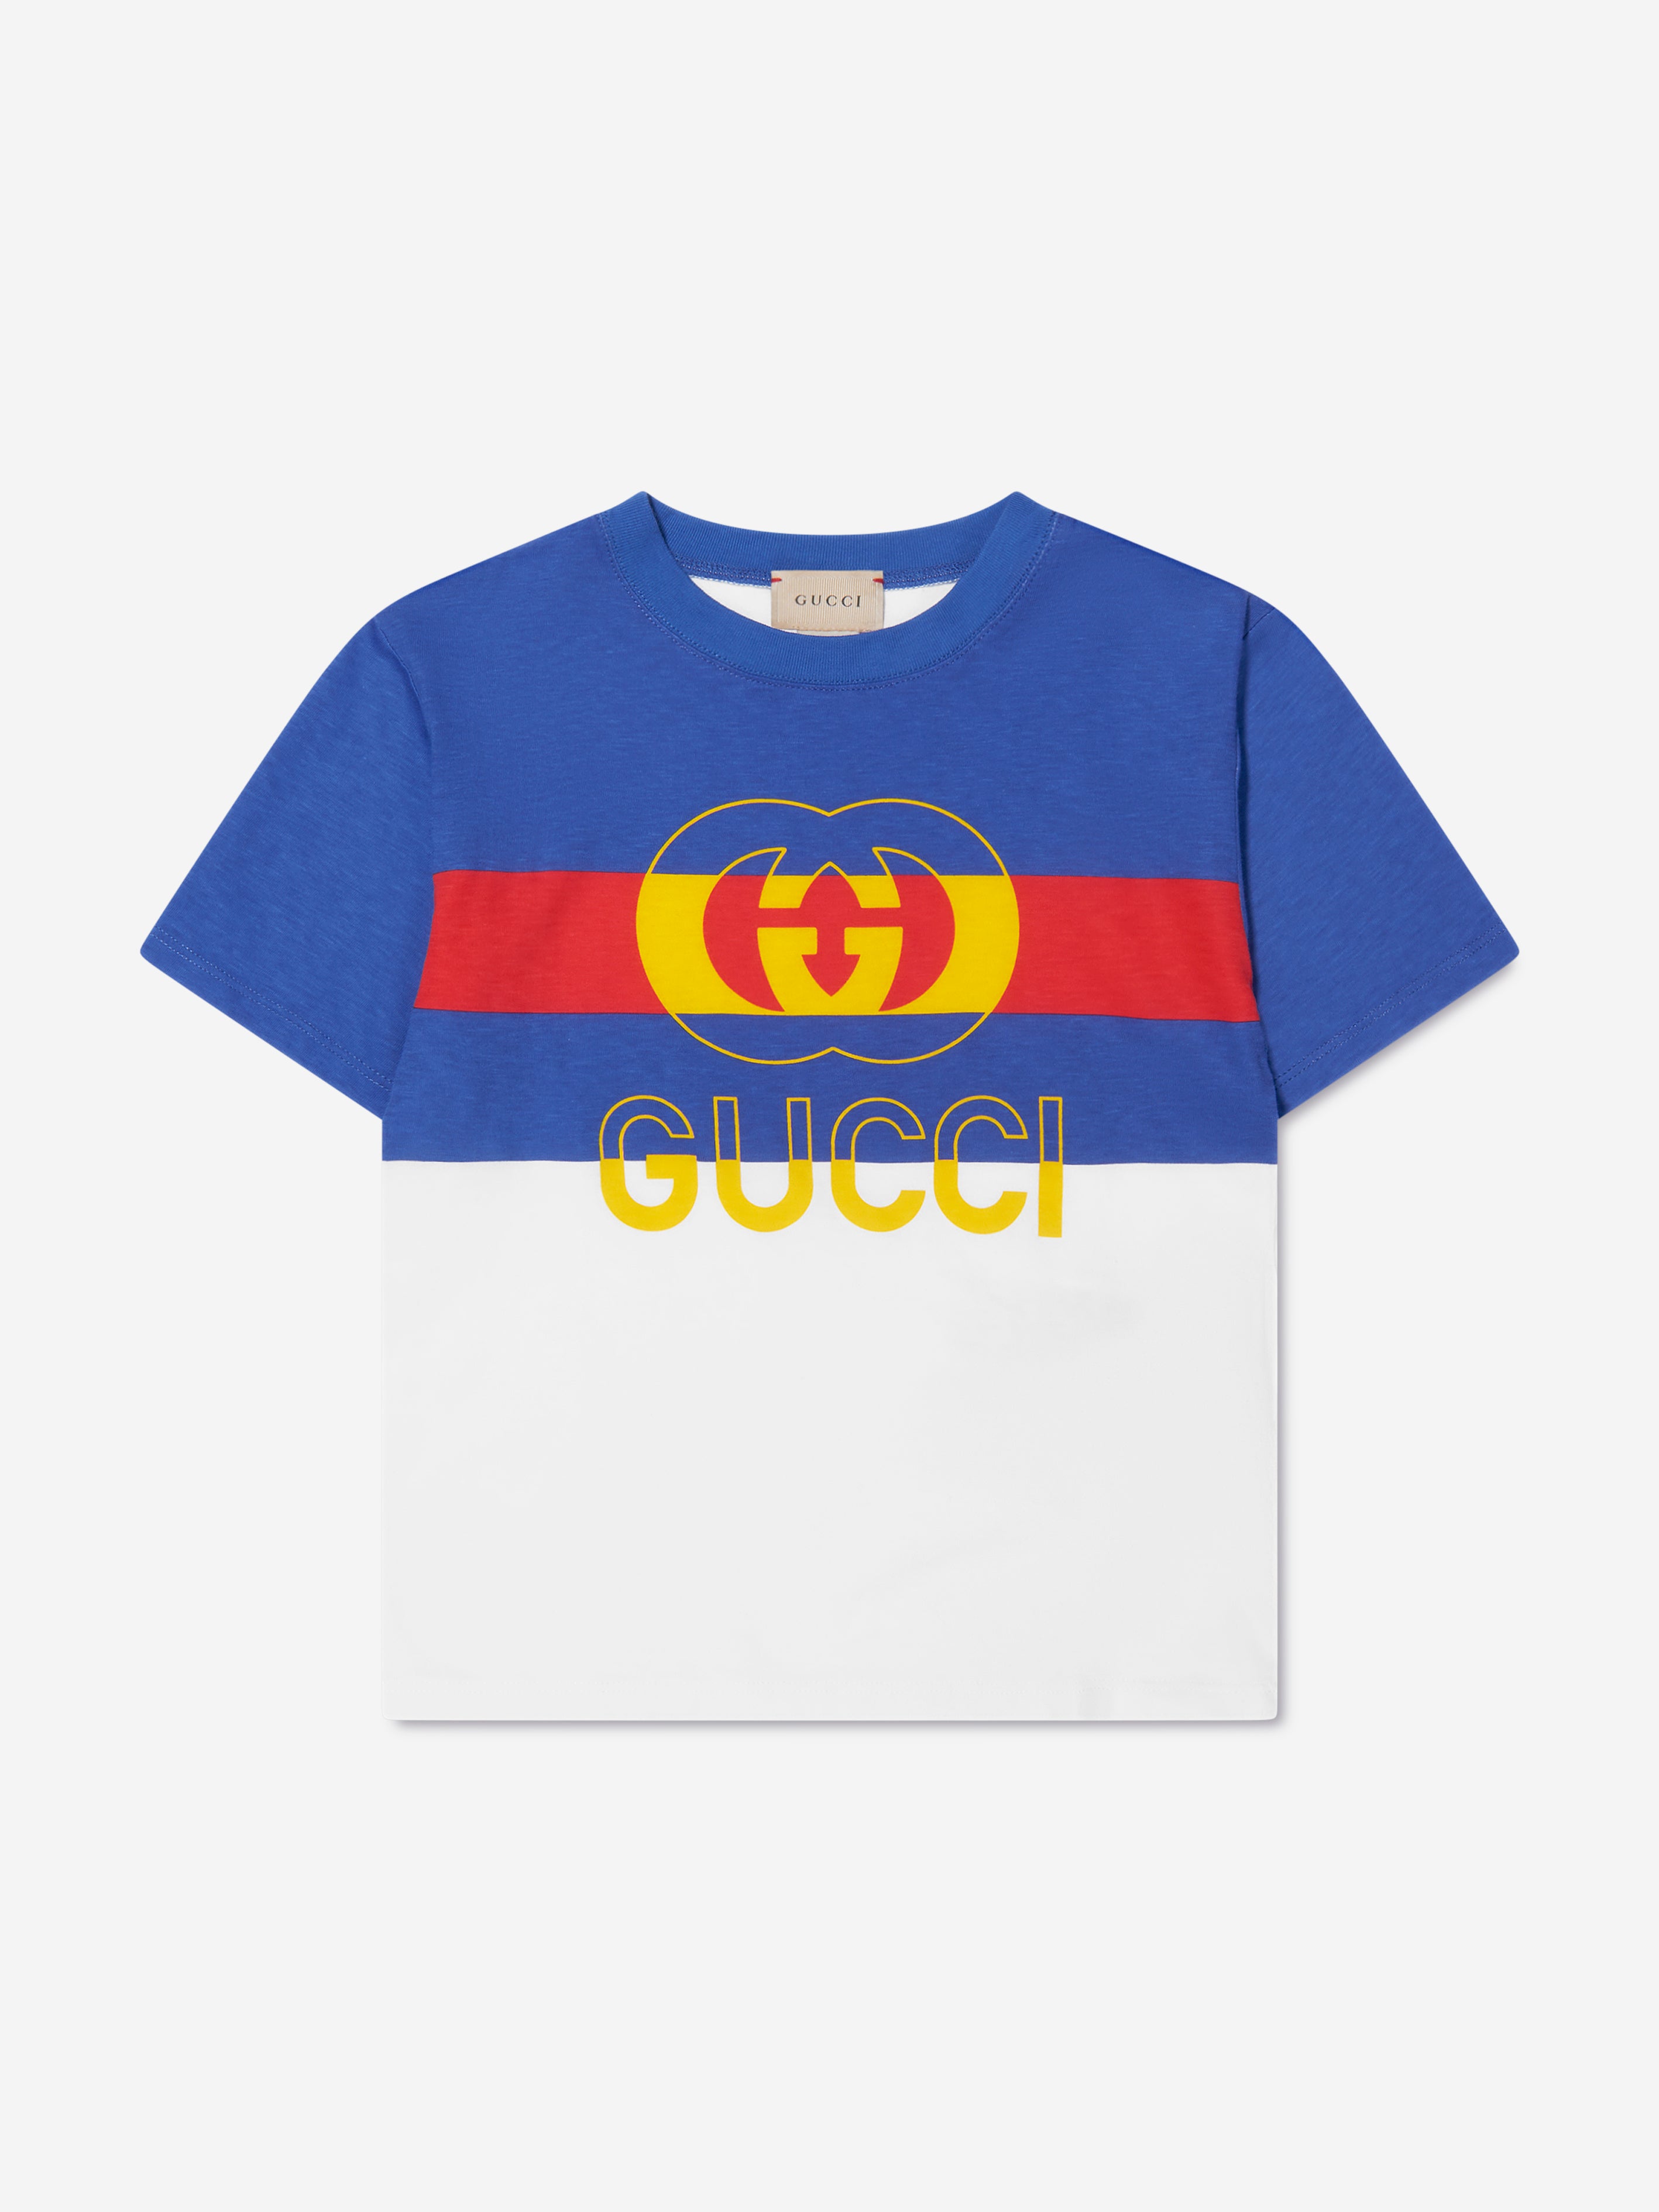 Gucci Kids' Boys Striped Logo T-shirt In White